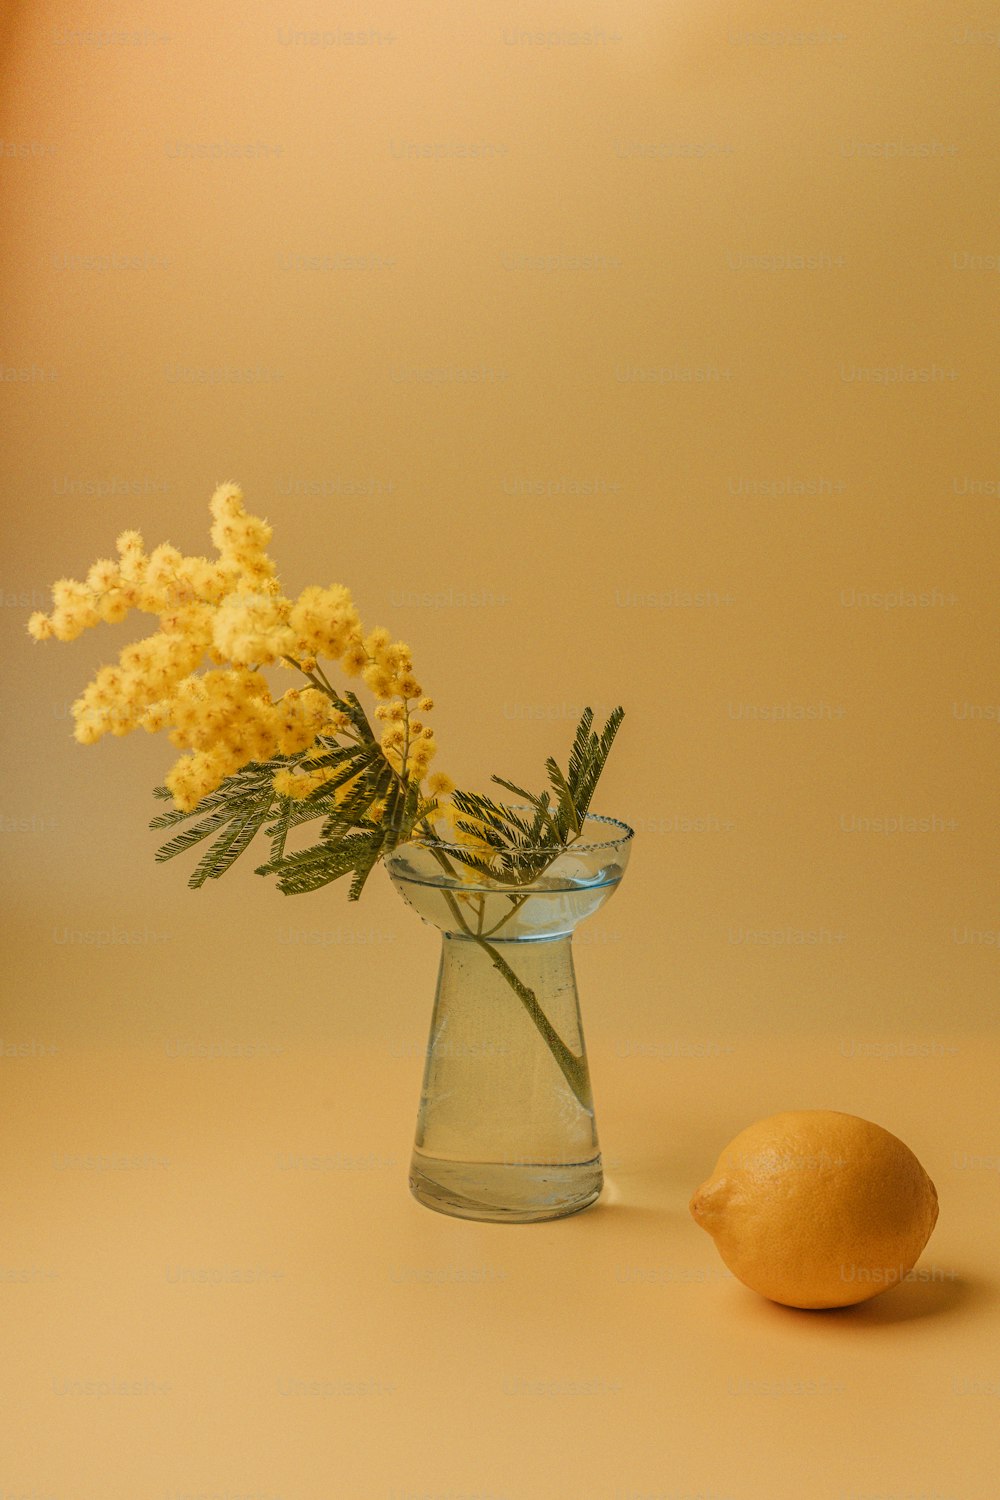 eine gelbe Blume in einer Glasvase neben einer Zitrone